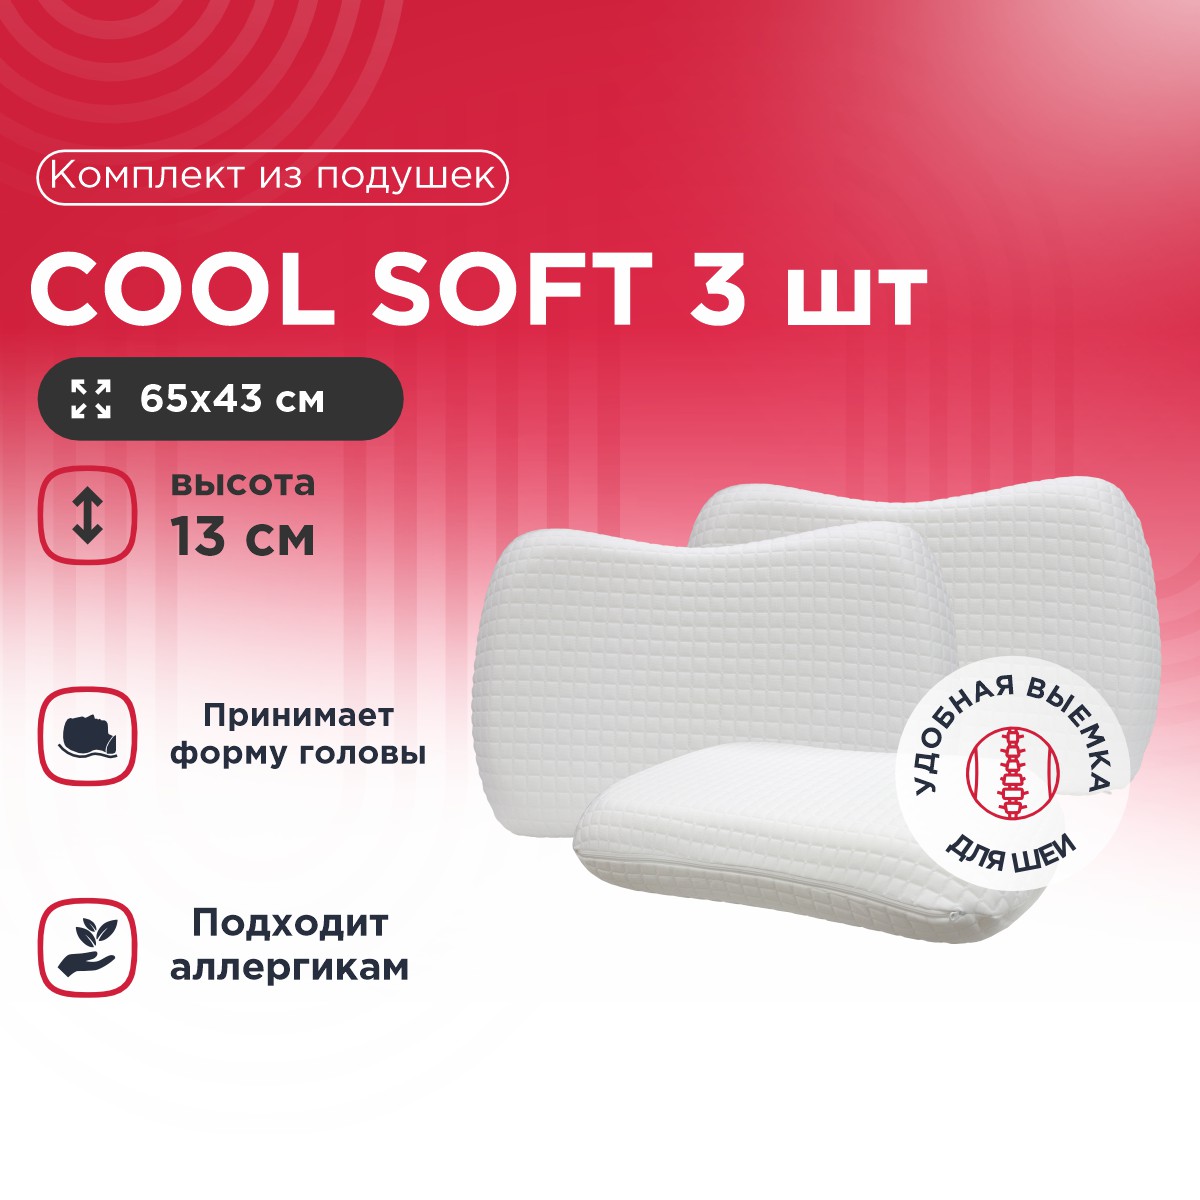 Комплект из подушек Cool Soft 3 шт